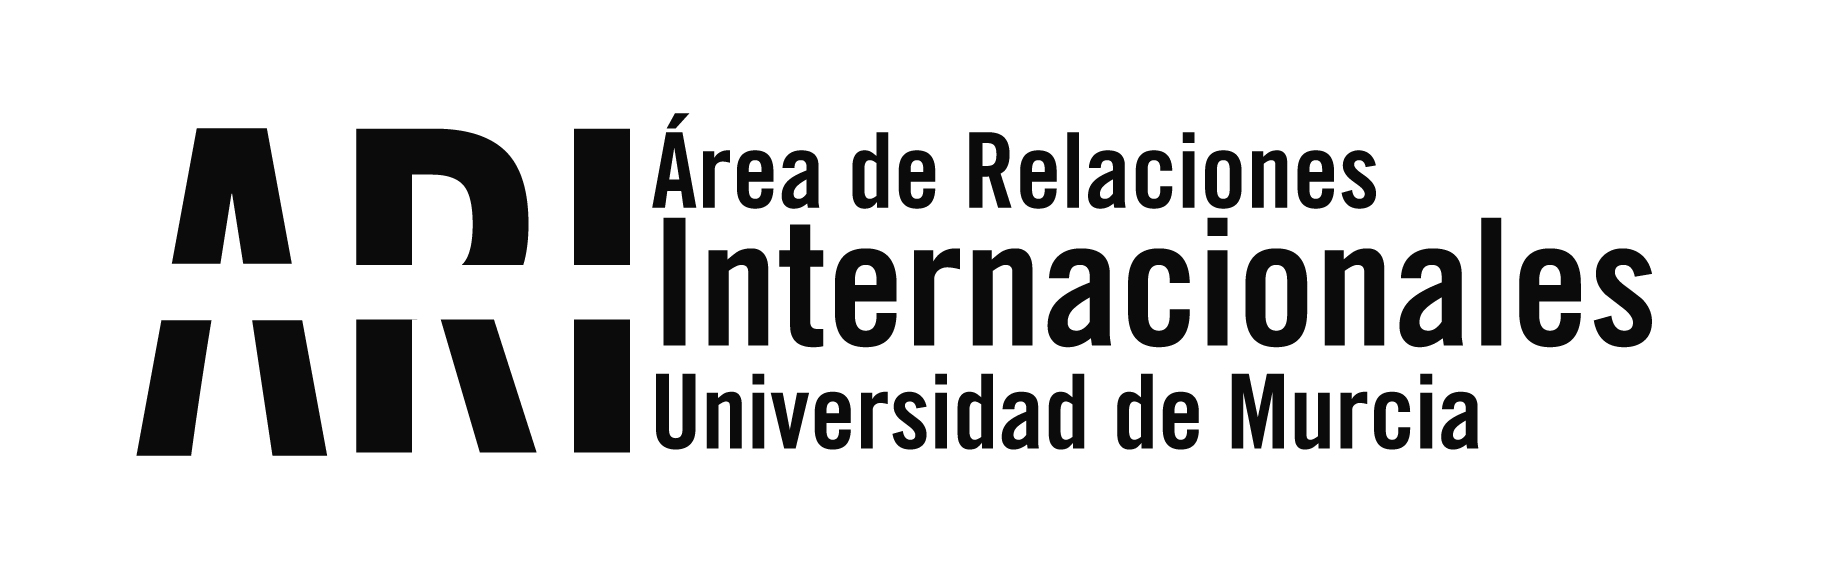 2016-04 Reunión EM Cruz del Sur en UTP - Panamá - Viajes Institucionales - Área de Relaciones Internacionales